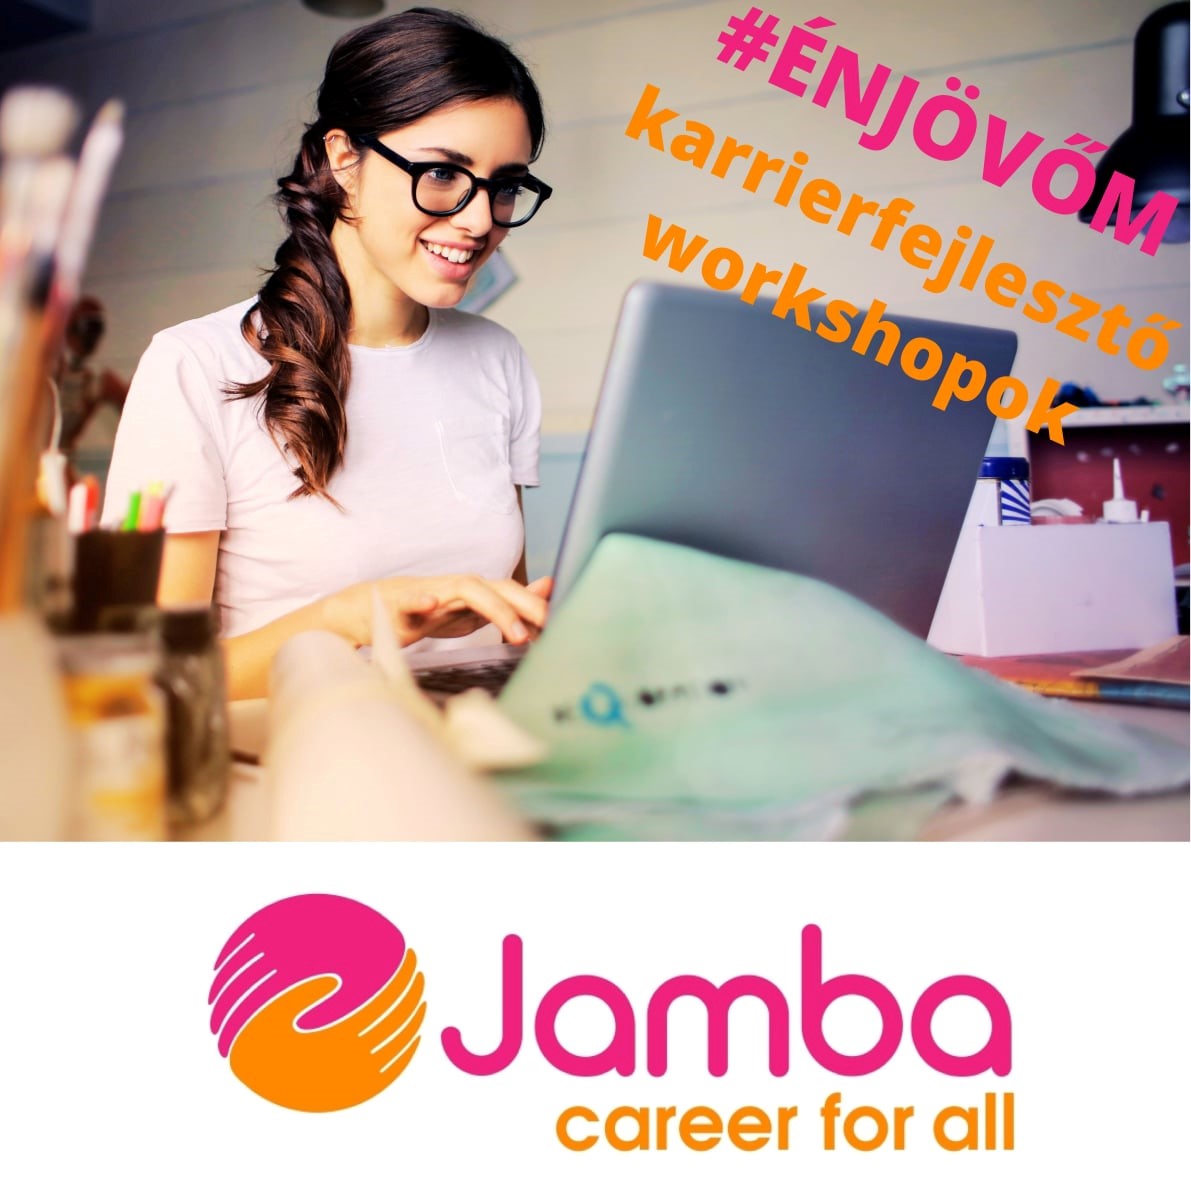 Lány egy laptop előtt, a kép jobb felső sarkában a következő szöveg: #énjövőm karrierfejlesztő workshopok